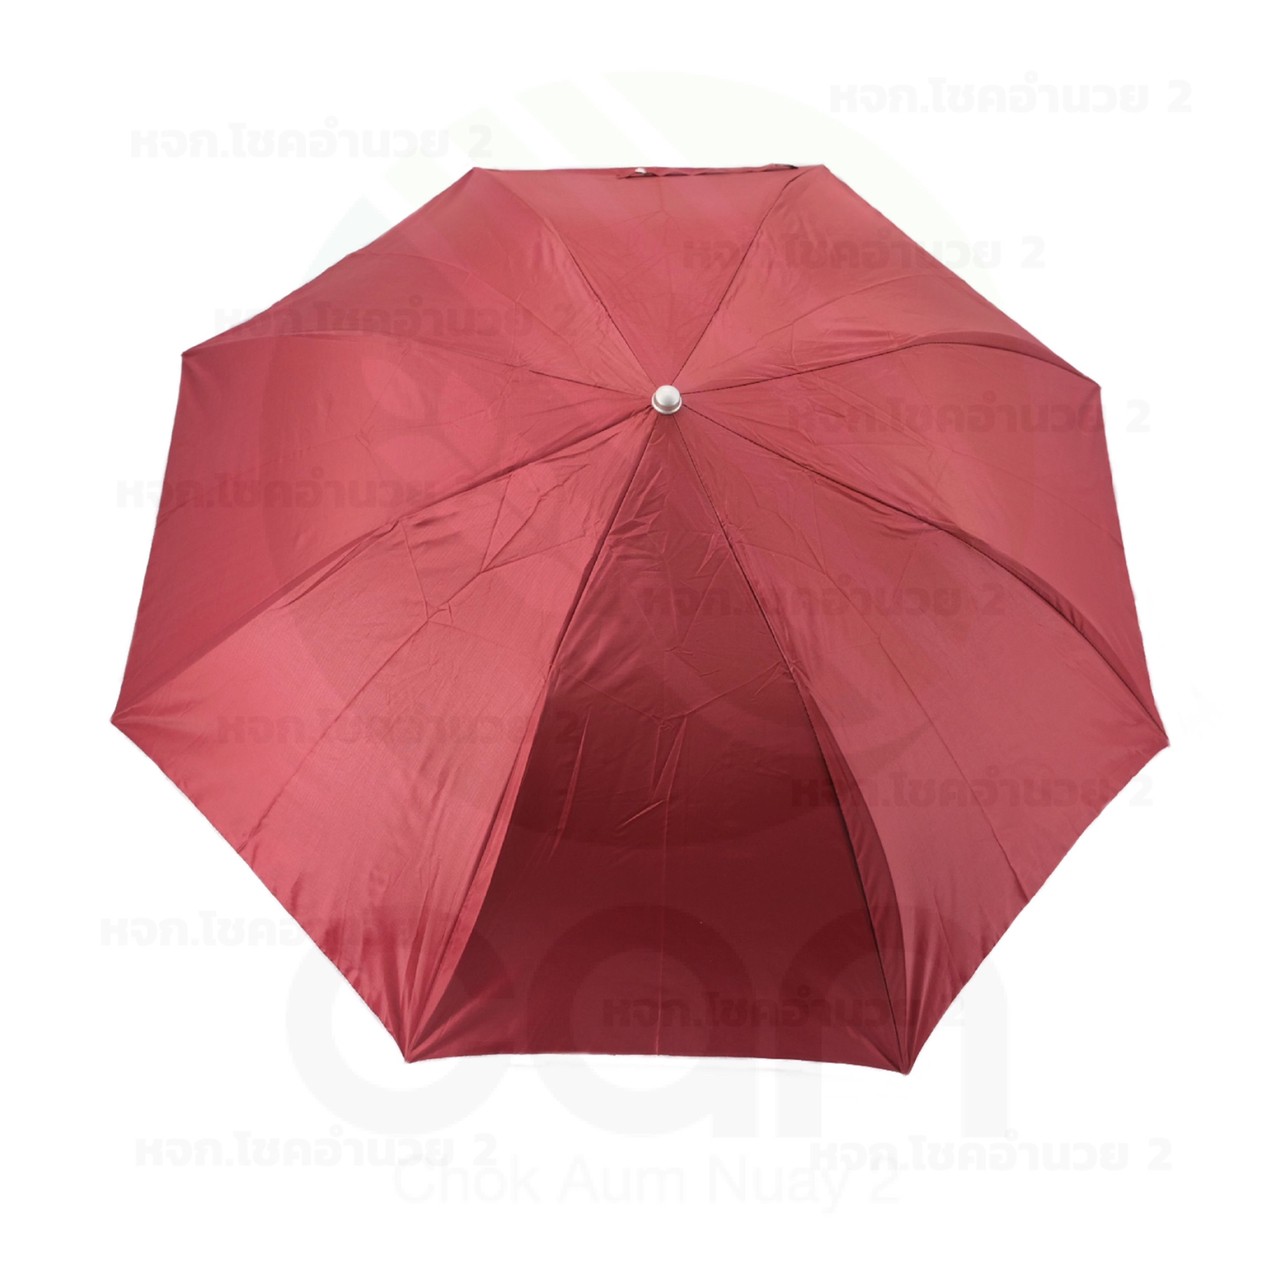 ร่มพับ 2 ตอน กันยูวี กันฝน เลือกสีได้ คละสี สีพื้น สีทูโทน ร่มพกพา ร่มกันแดด ร่มกันUV Umbrella ร่มถือ